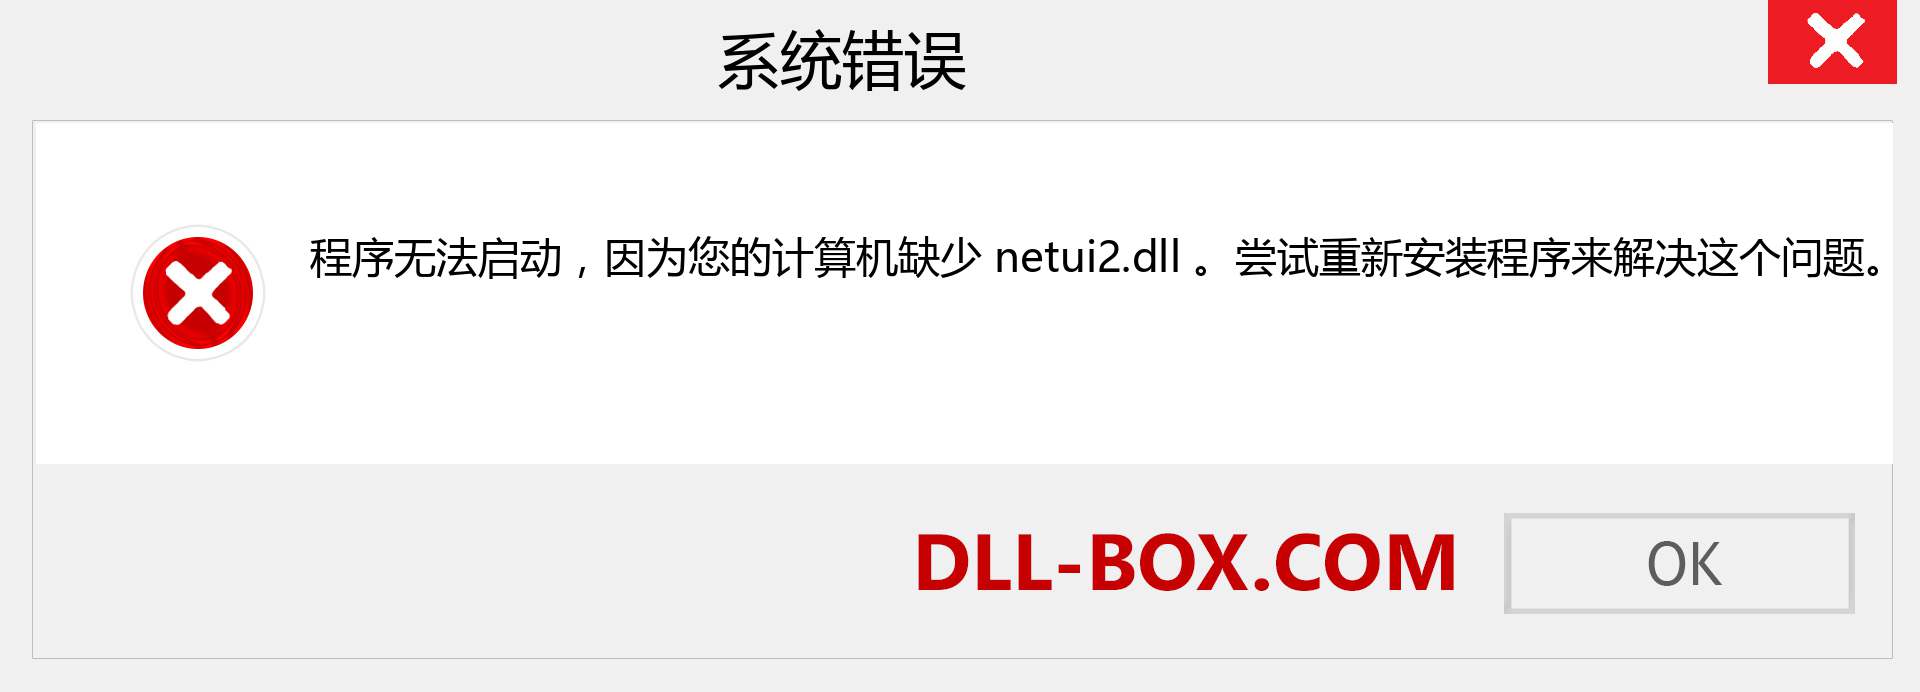 netui2.dll 文件丢失？。 适用于 Windows 7、8、10 的下载 - 修复 Windows、照片、图像上的 netui2 dll 丢失错误